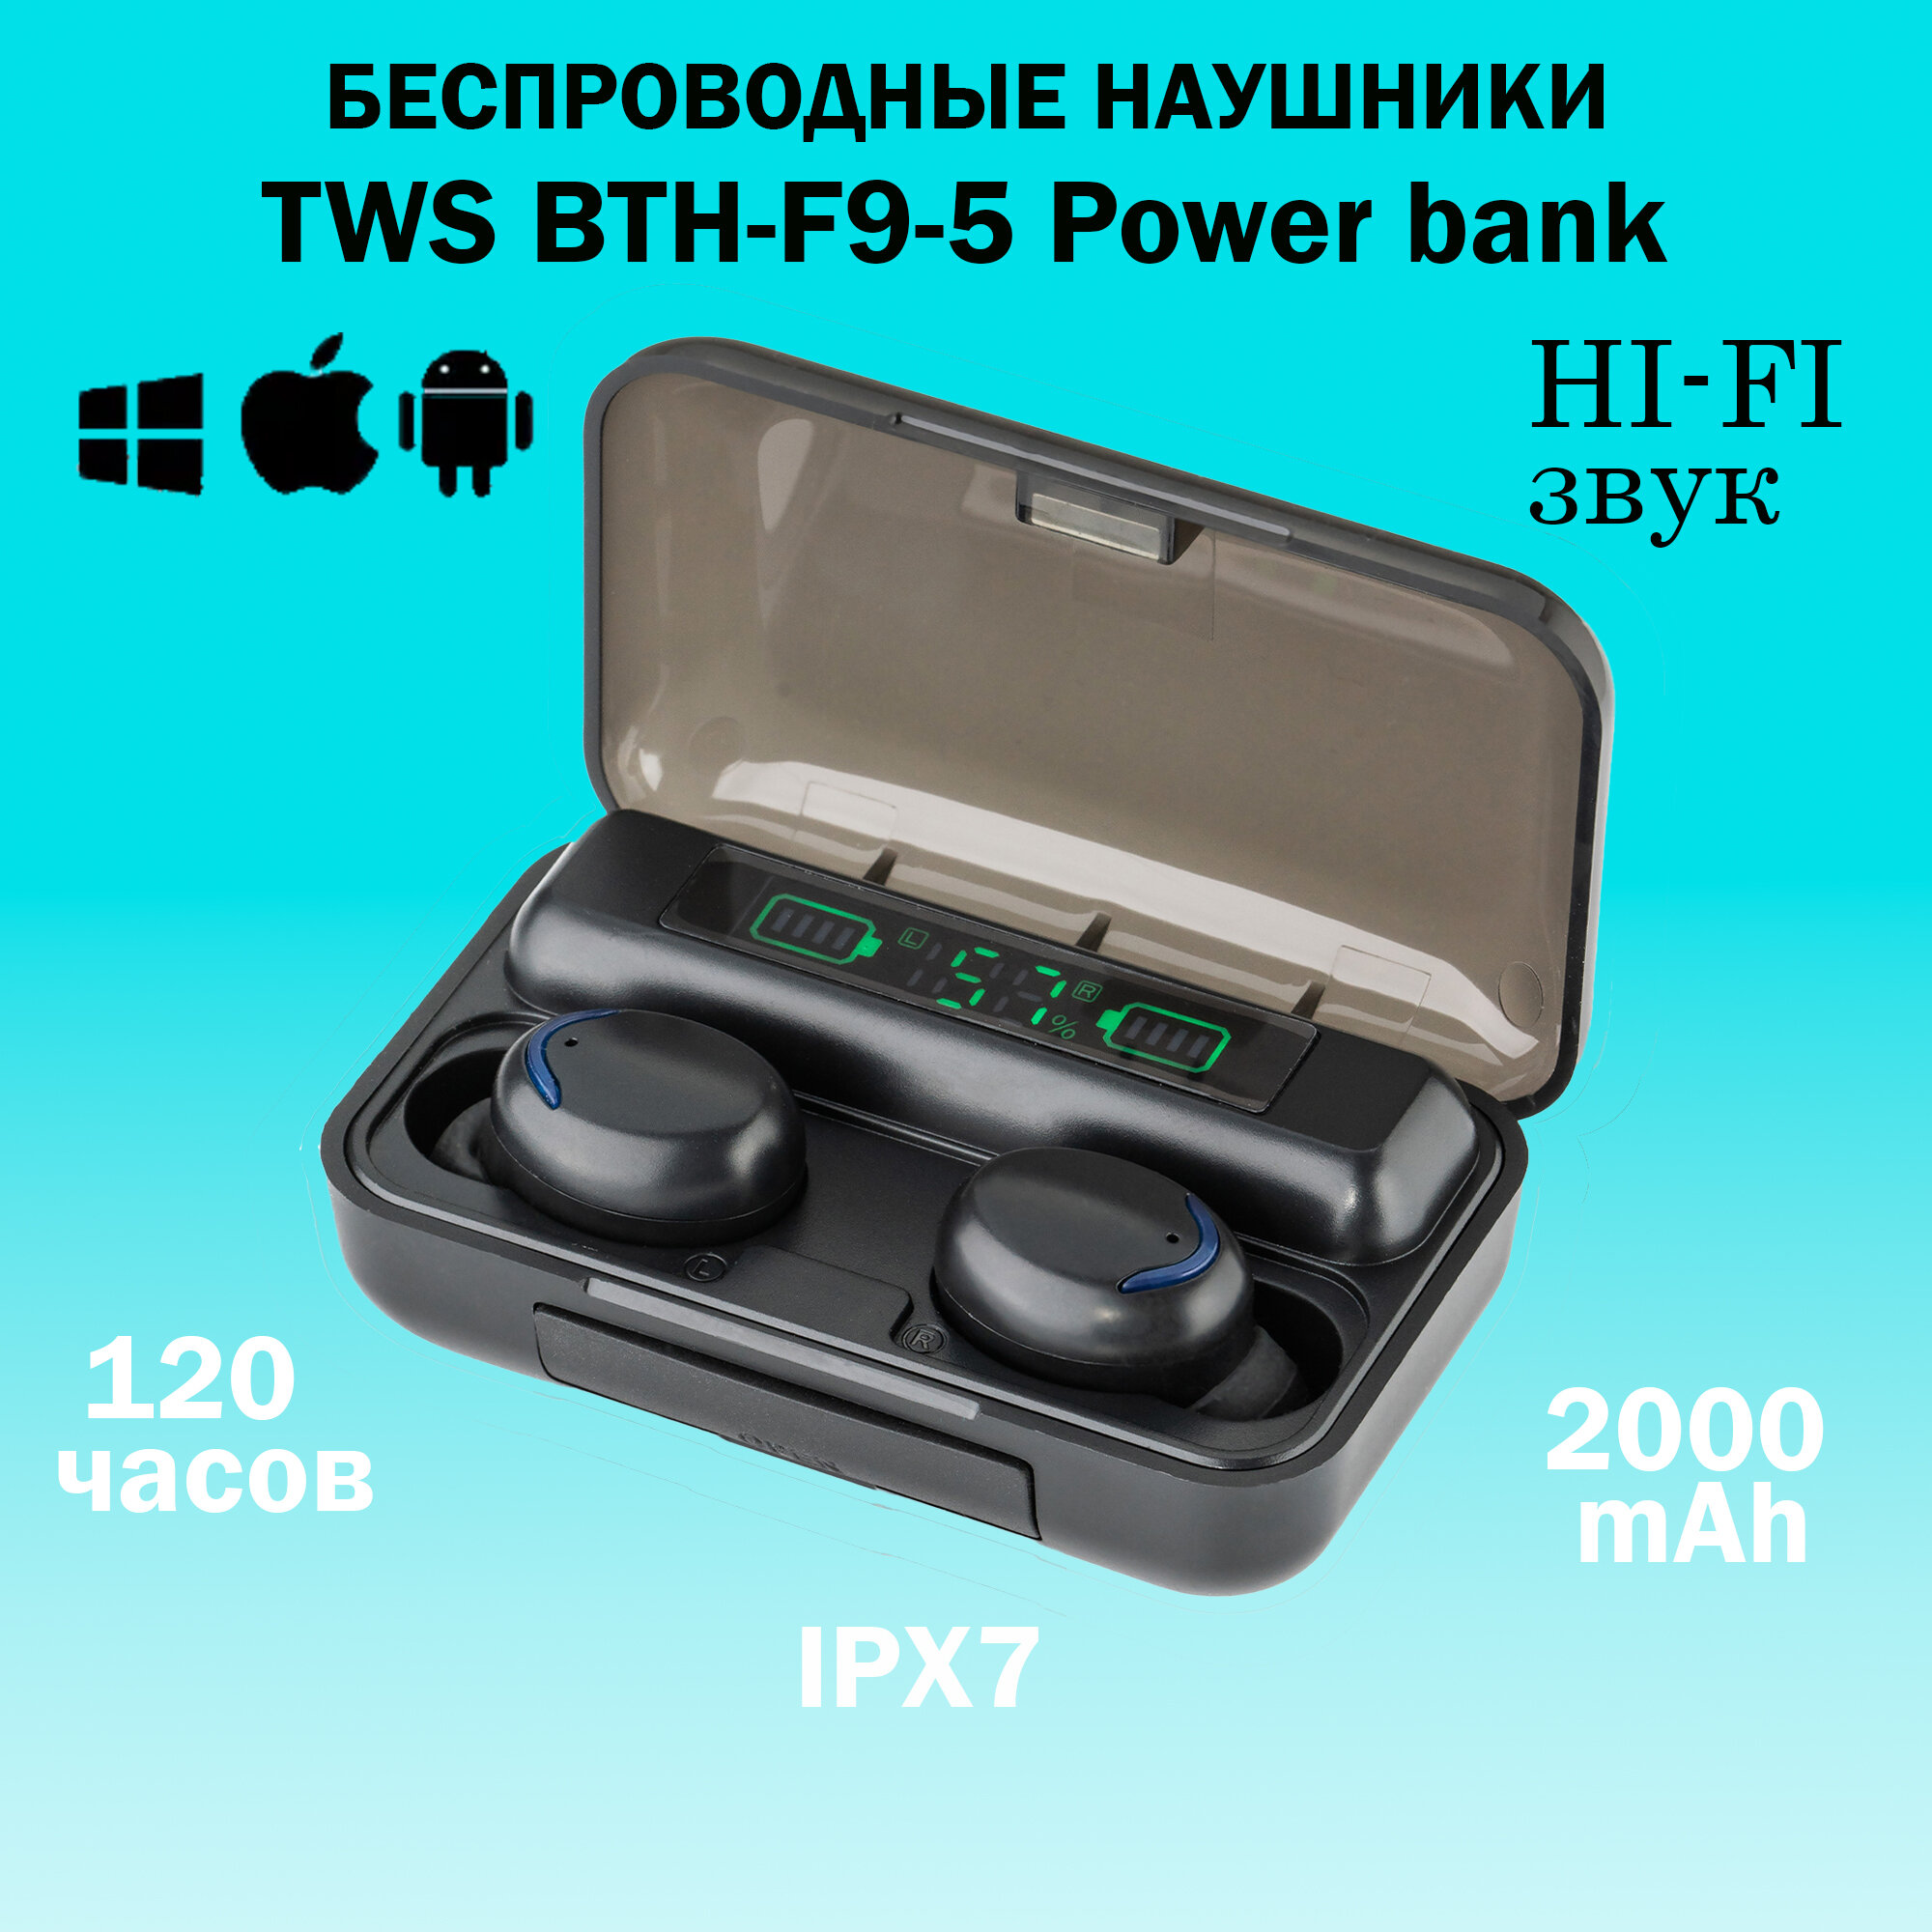 Беспроводные наушники TWS BTH-F9-5 Power bank Bluetooth v5.1, чёрные, гарнитура, с микрофоном, для Android, iOS, PC, Windows Phone